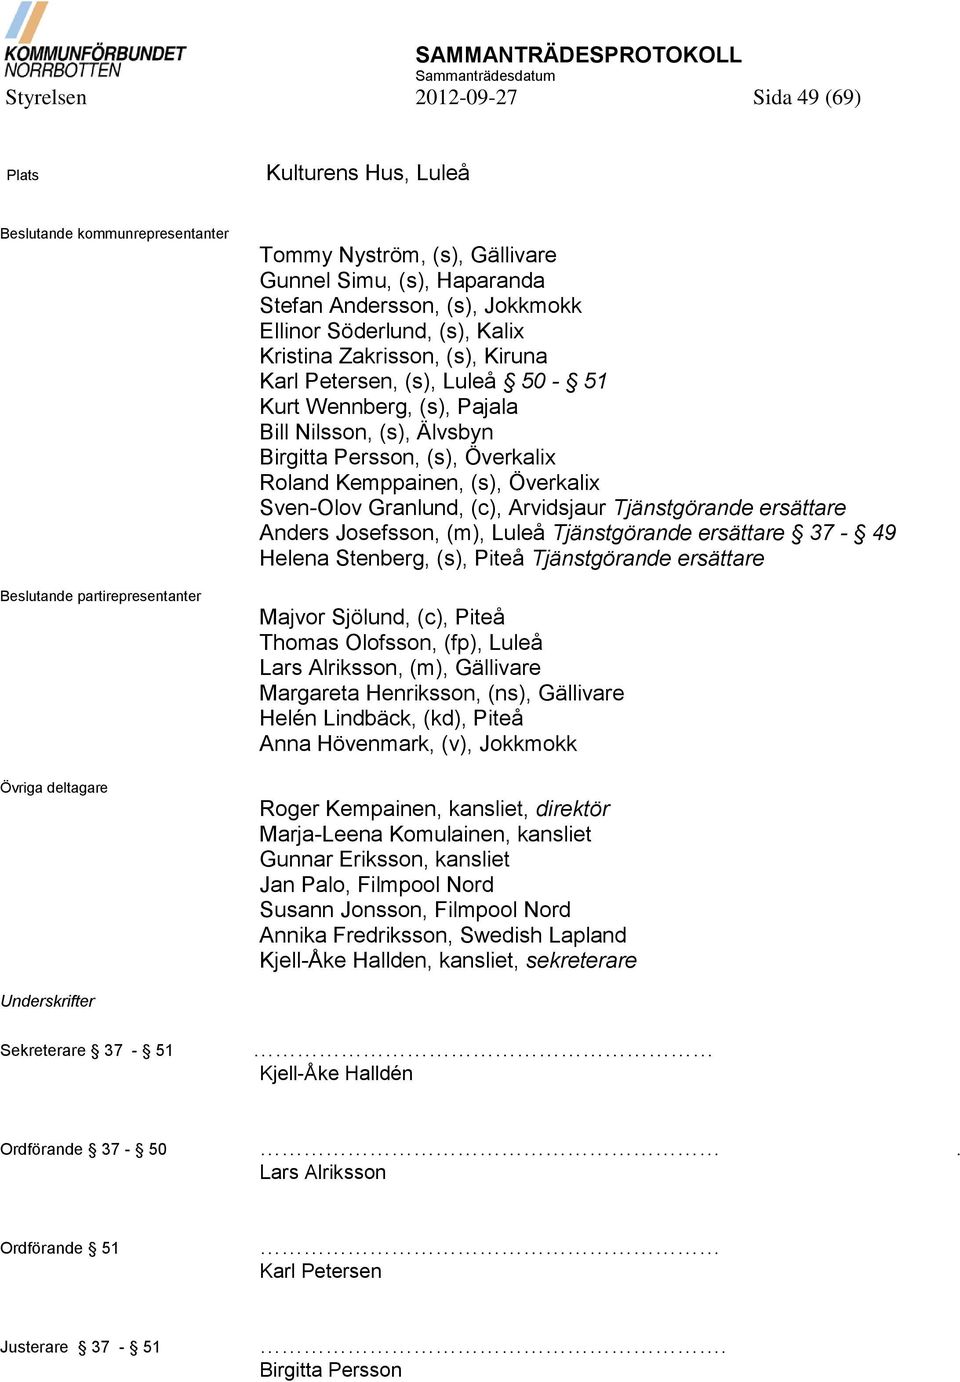 (s), Överkalix Roland Kemppainen, (s), Överkalix Sven-Olov Granlund, (c), Arvidsjaur Tjänstgörande ersättare Anders Josefsson, (m), Luleå Tjänstgörande ersättare 37-49 Helena Stenberg, (s), Piteå